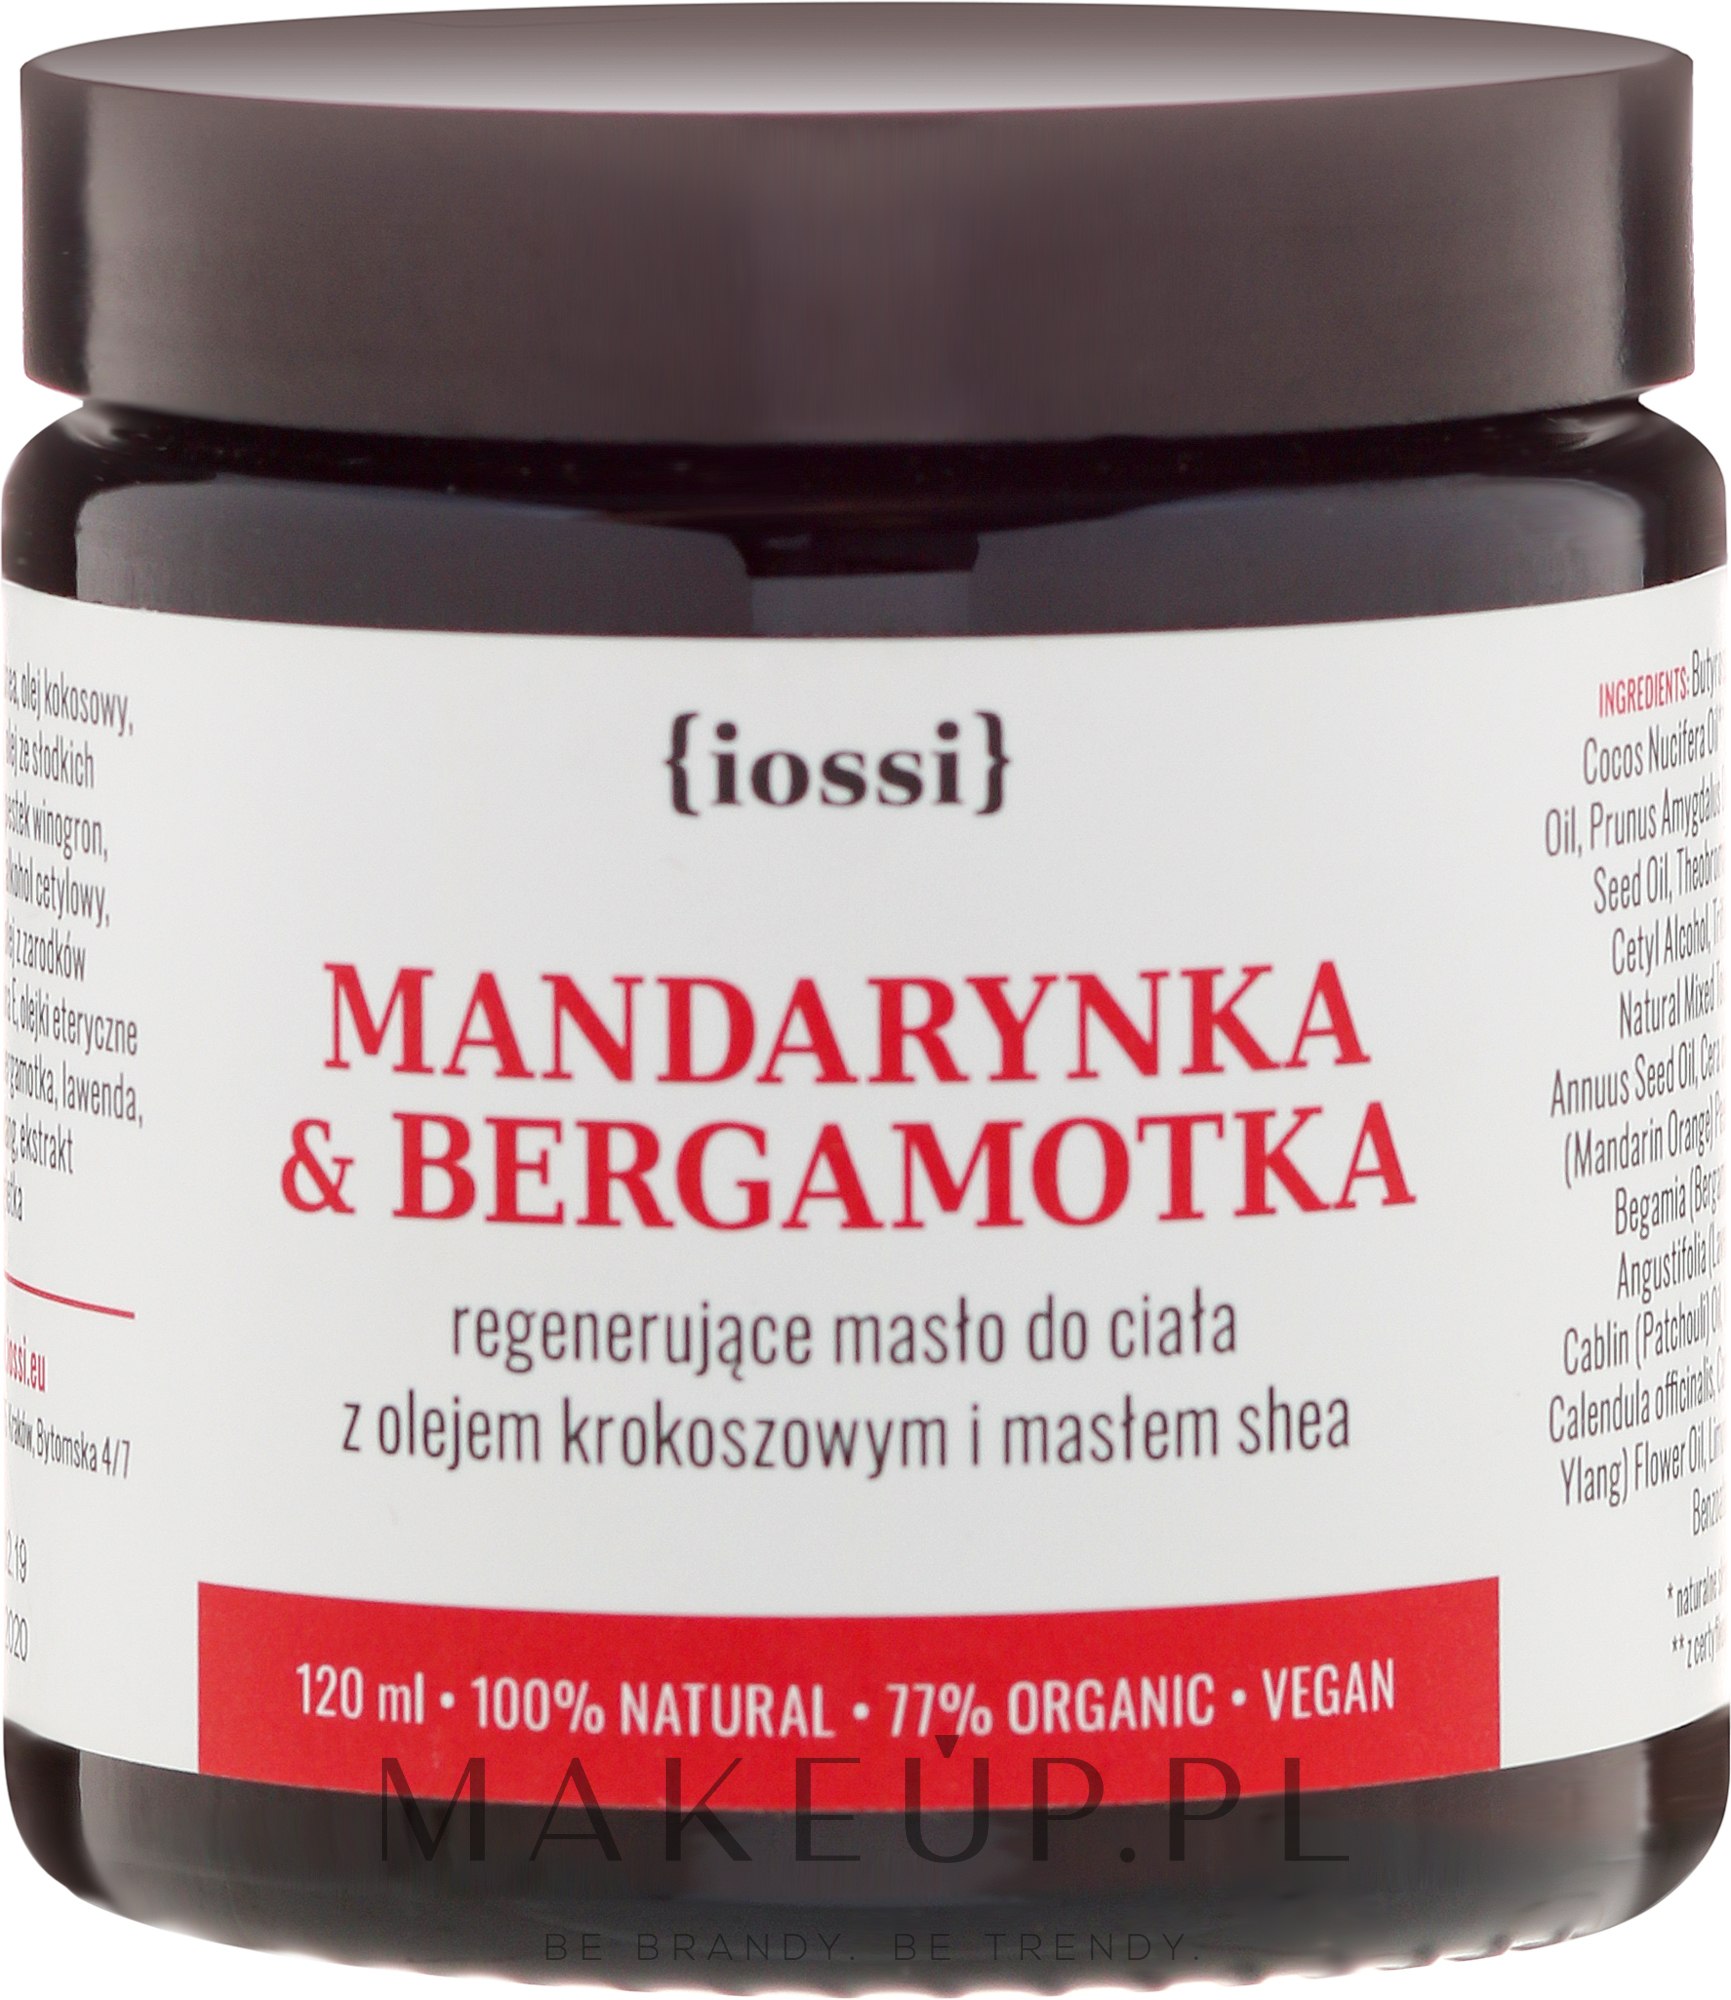 Regenerujące masło do ciała z masłem shea Mandarynka i bergamotka - Iossi — Zdjęcie 120 ml